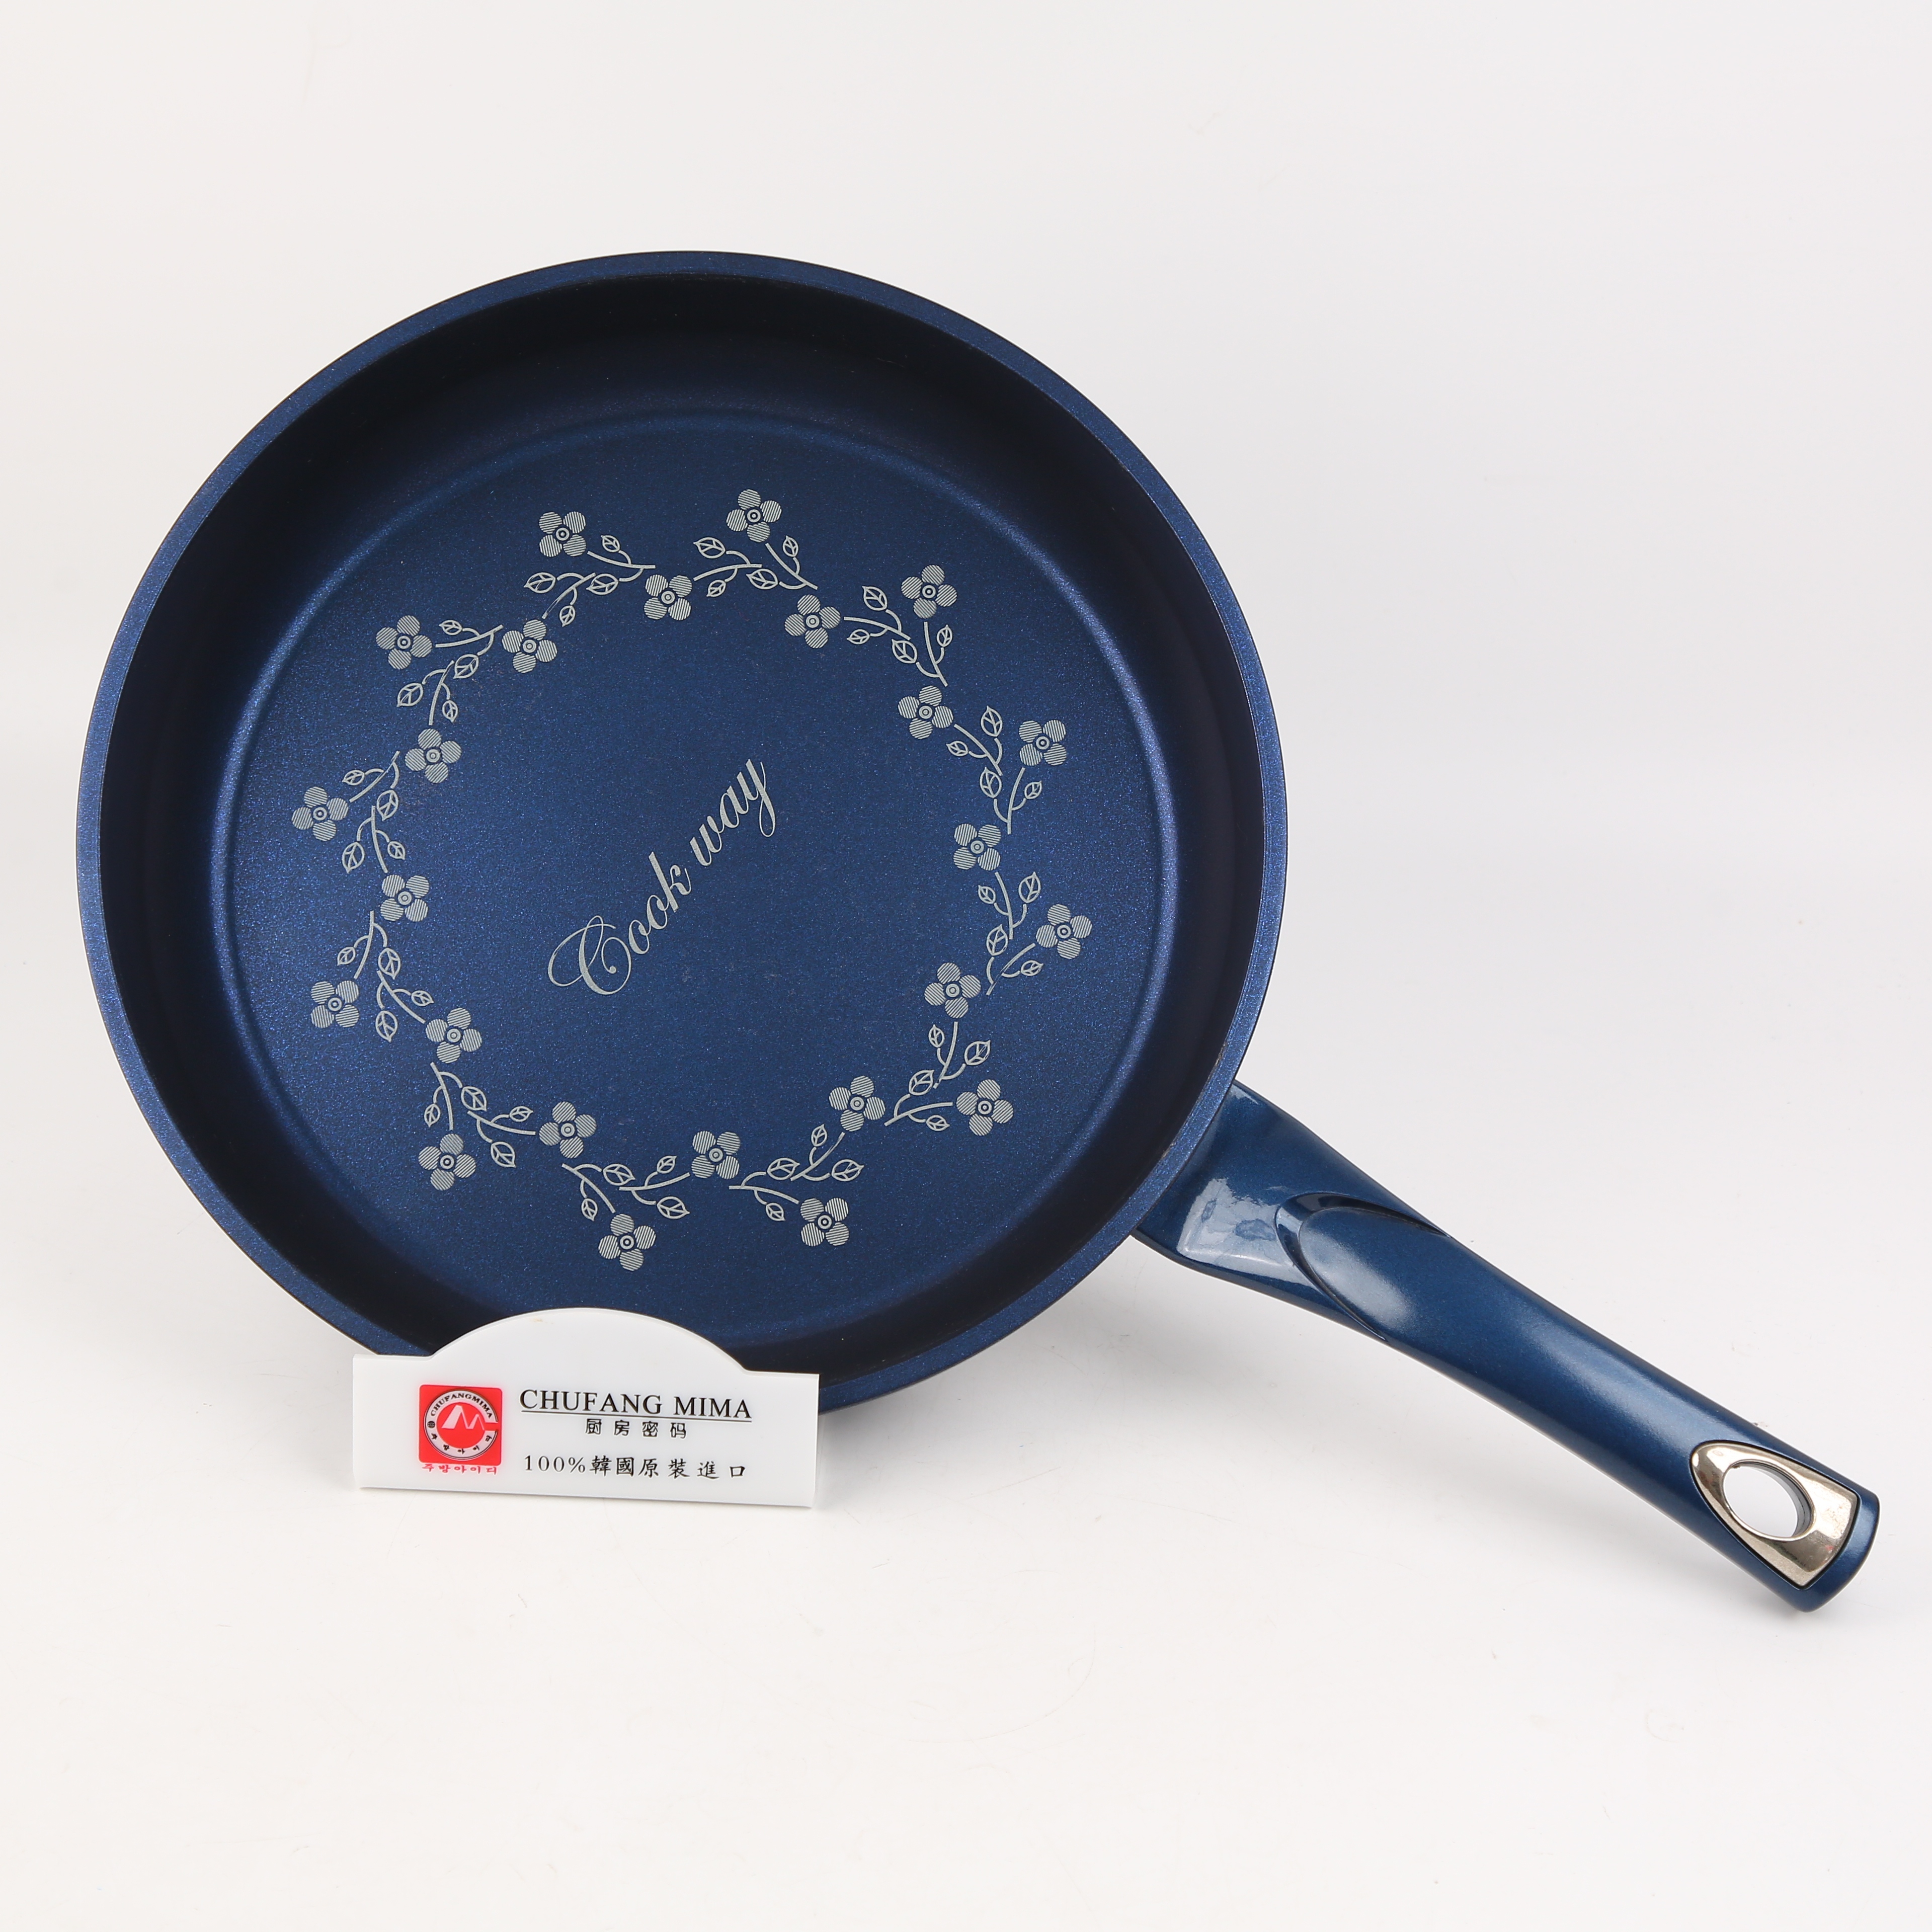 厨房密码 韩国原装进口 蓝色钻石单柄煎锅30cm